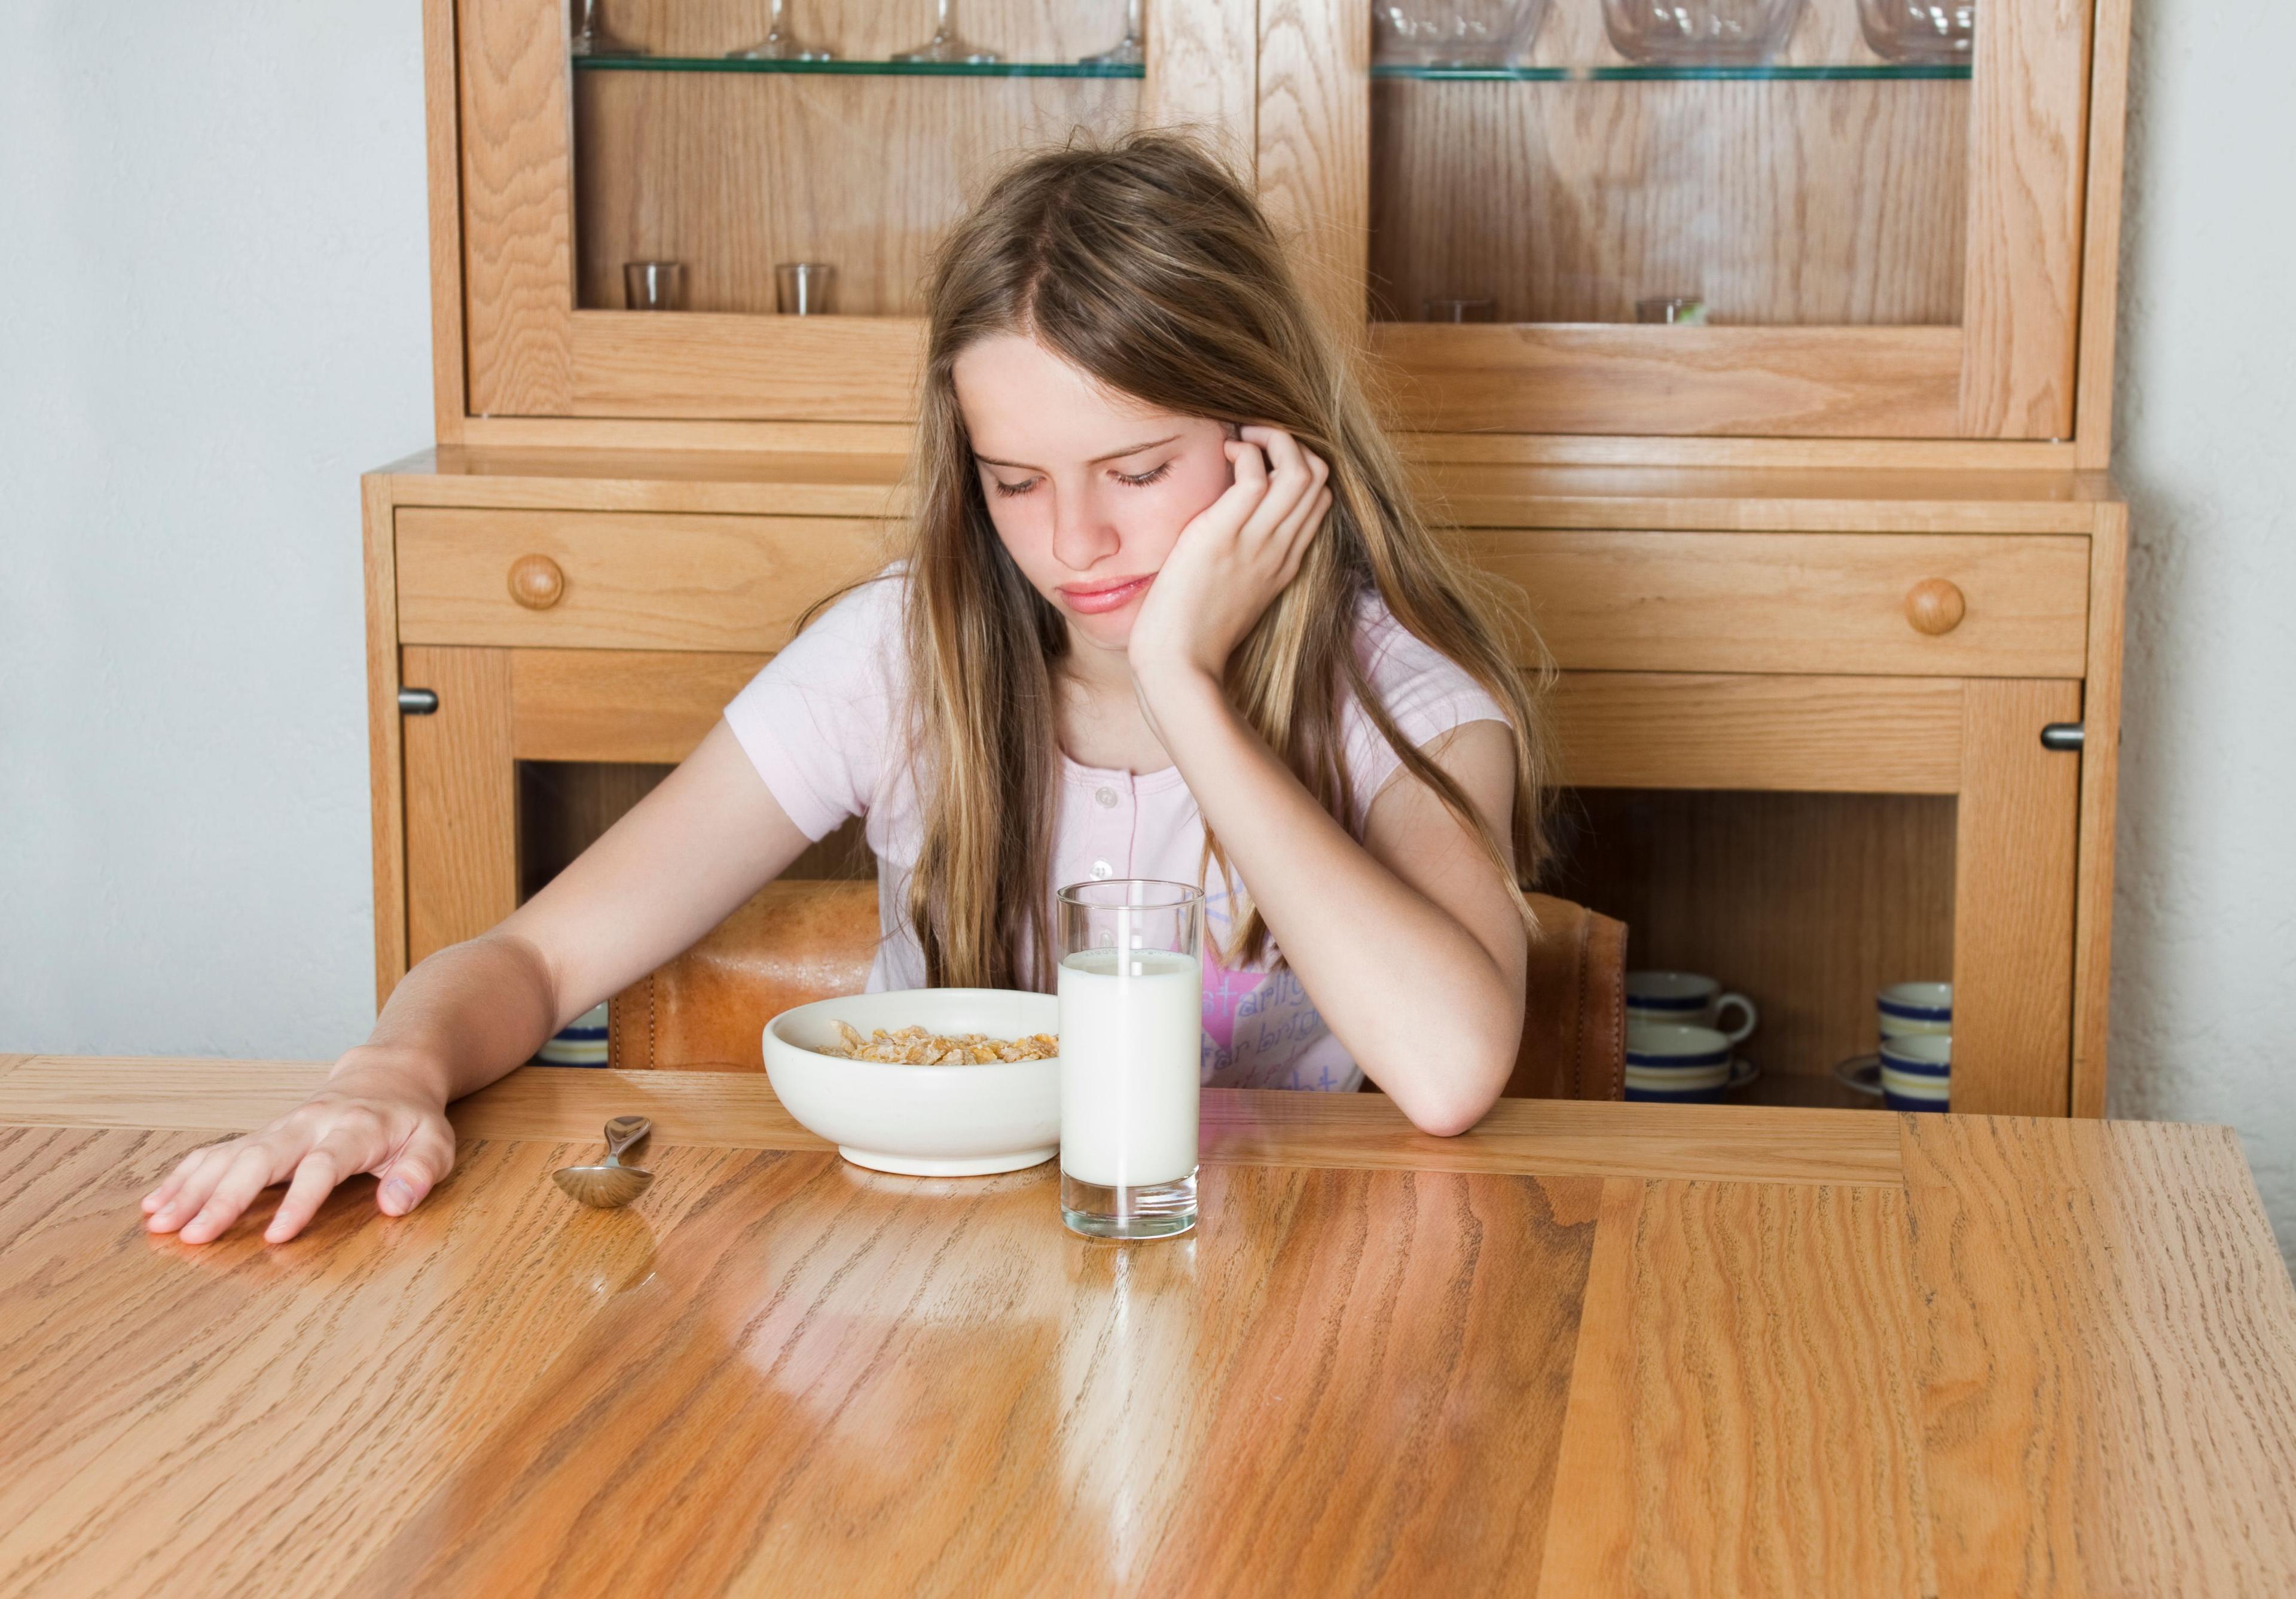 Disturbi del comportamento alimentare: puoi ricevere aiuto